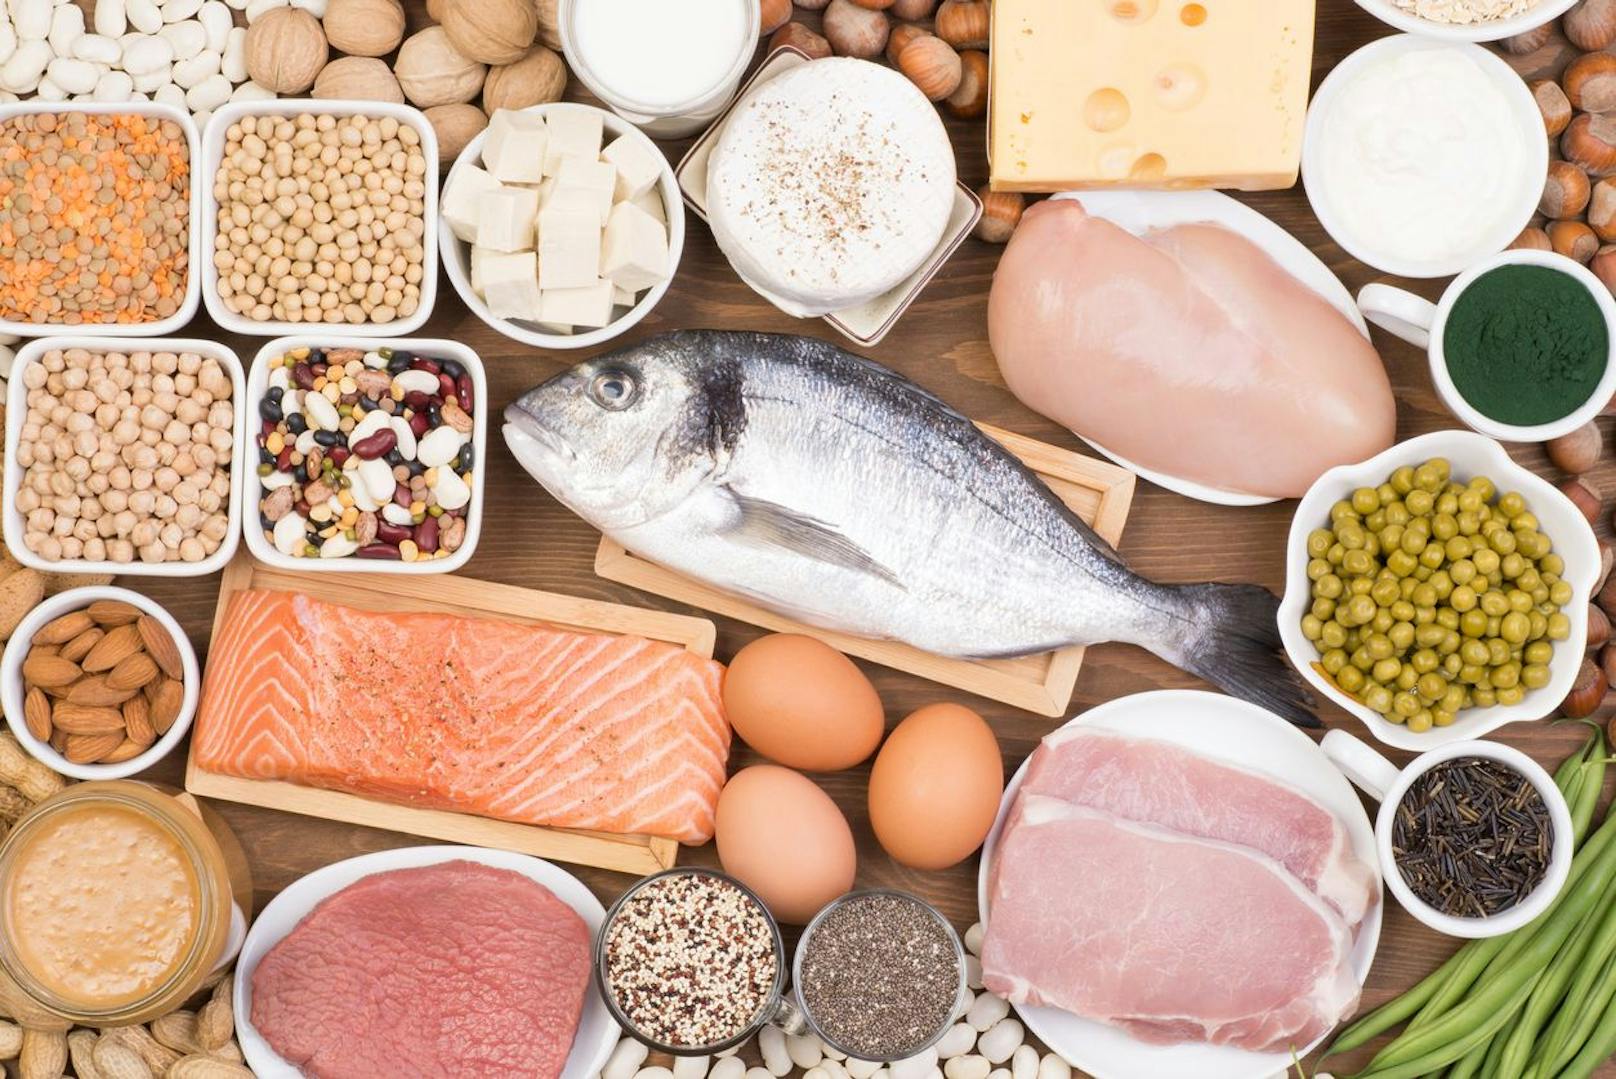 Lebensmittel, die viele Kohlenhydrate und Fette enthalten erhöhen den Tryptophananteil in deinem Blut. Diese führt zur Bildung vom Hormon Serotonin, welches schlaffördernd wirkt. Die Aminosäure Tryptophan ist auch in großen Mengen von proteinreichen Lebensmitteln wie Fisch oder Tofu enthalten.  